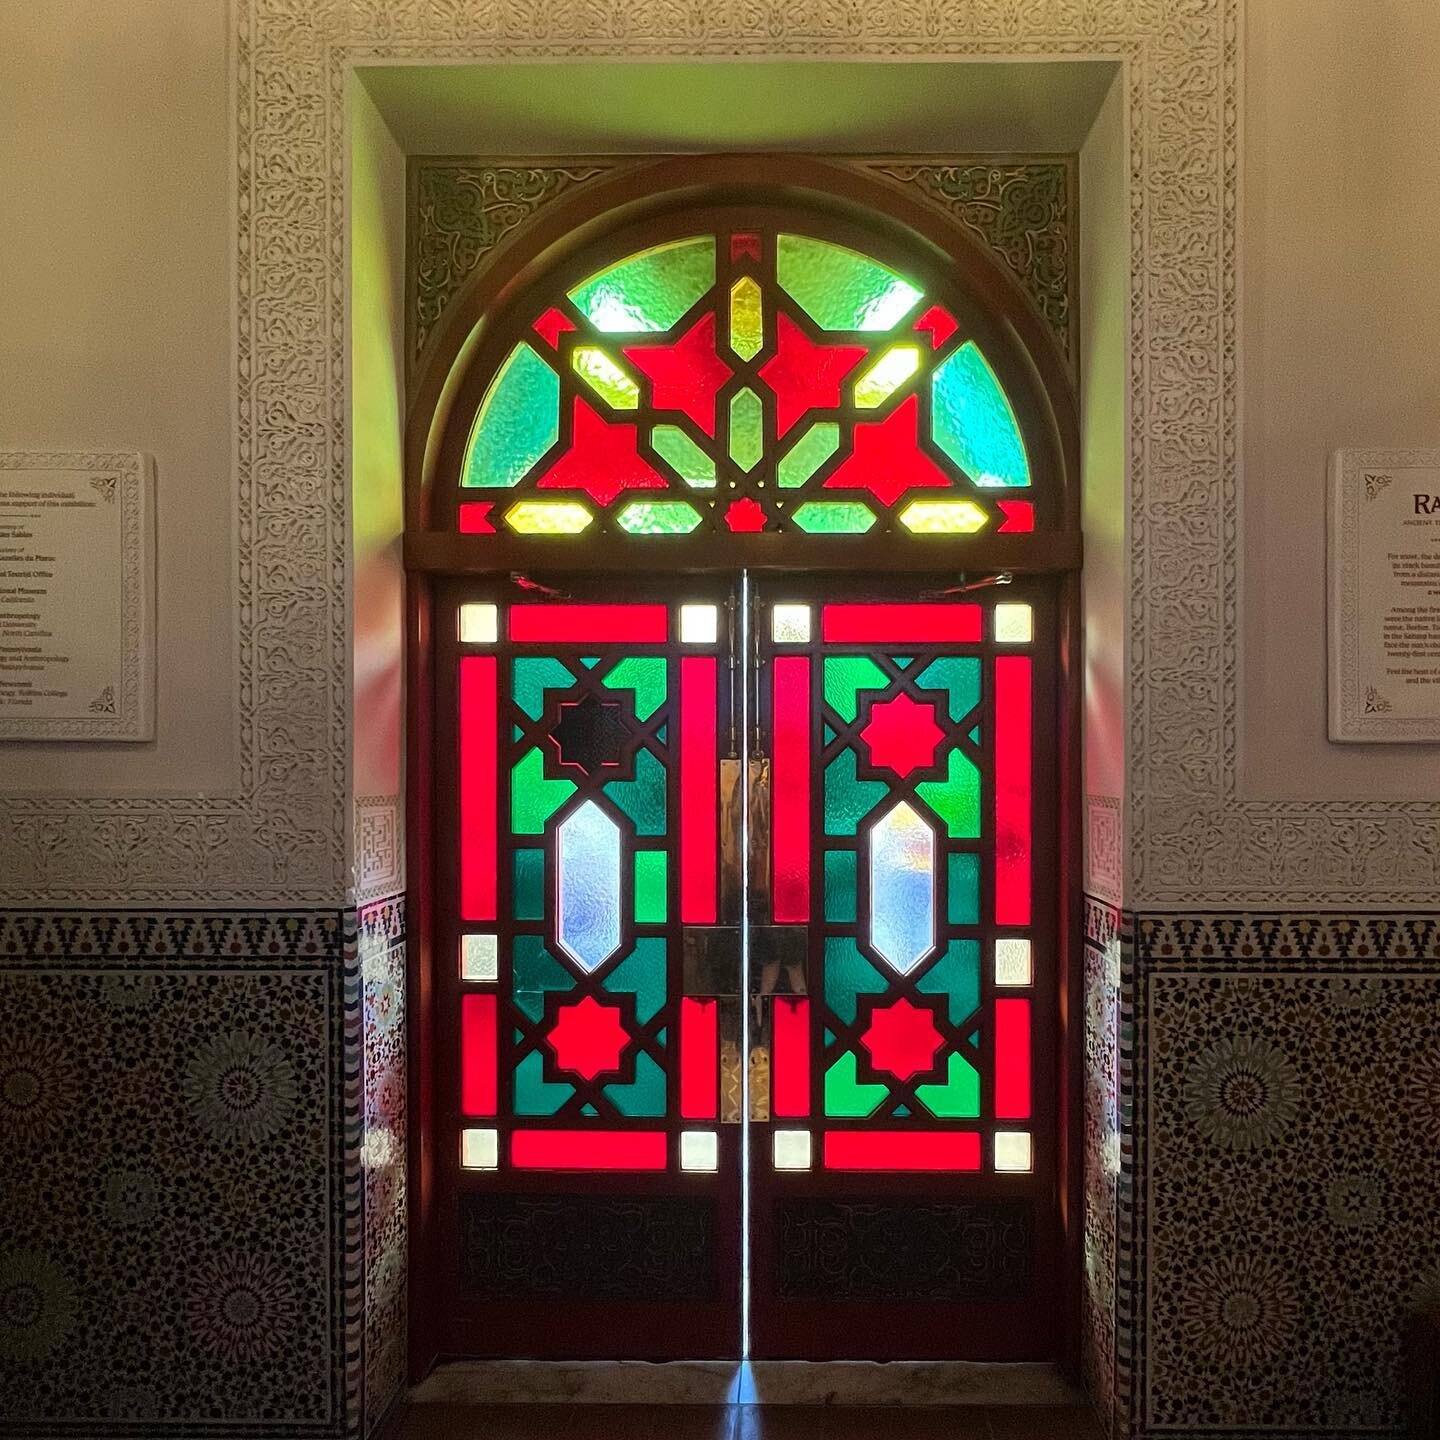 The door to Agrabah.